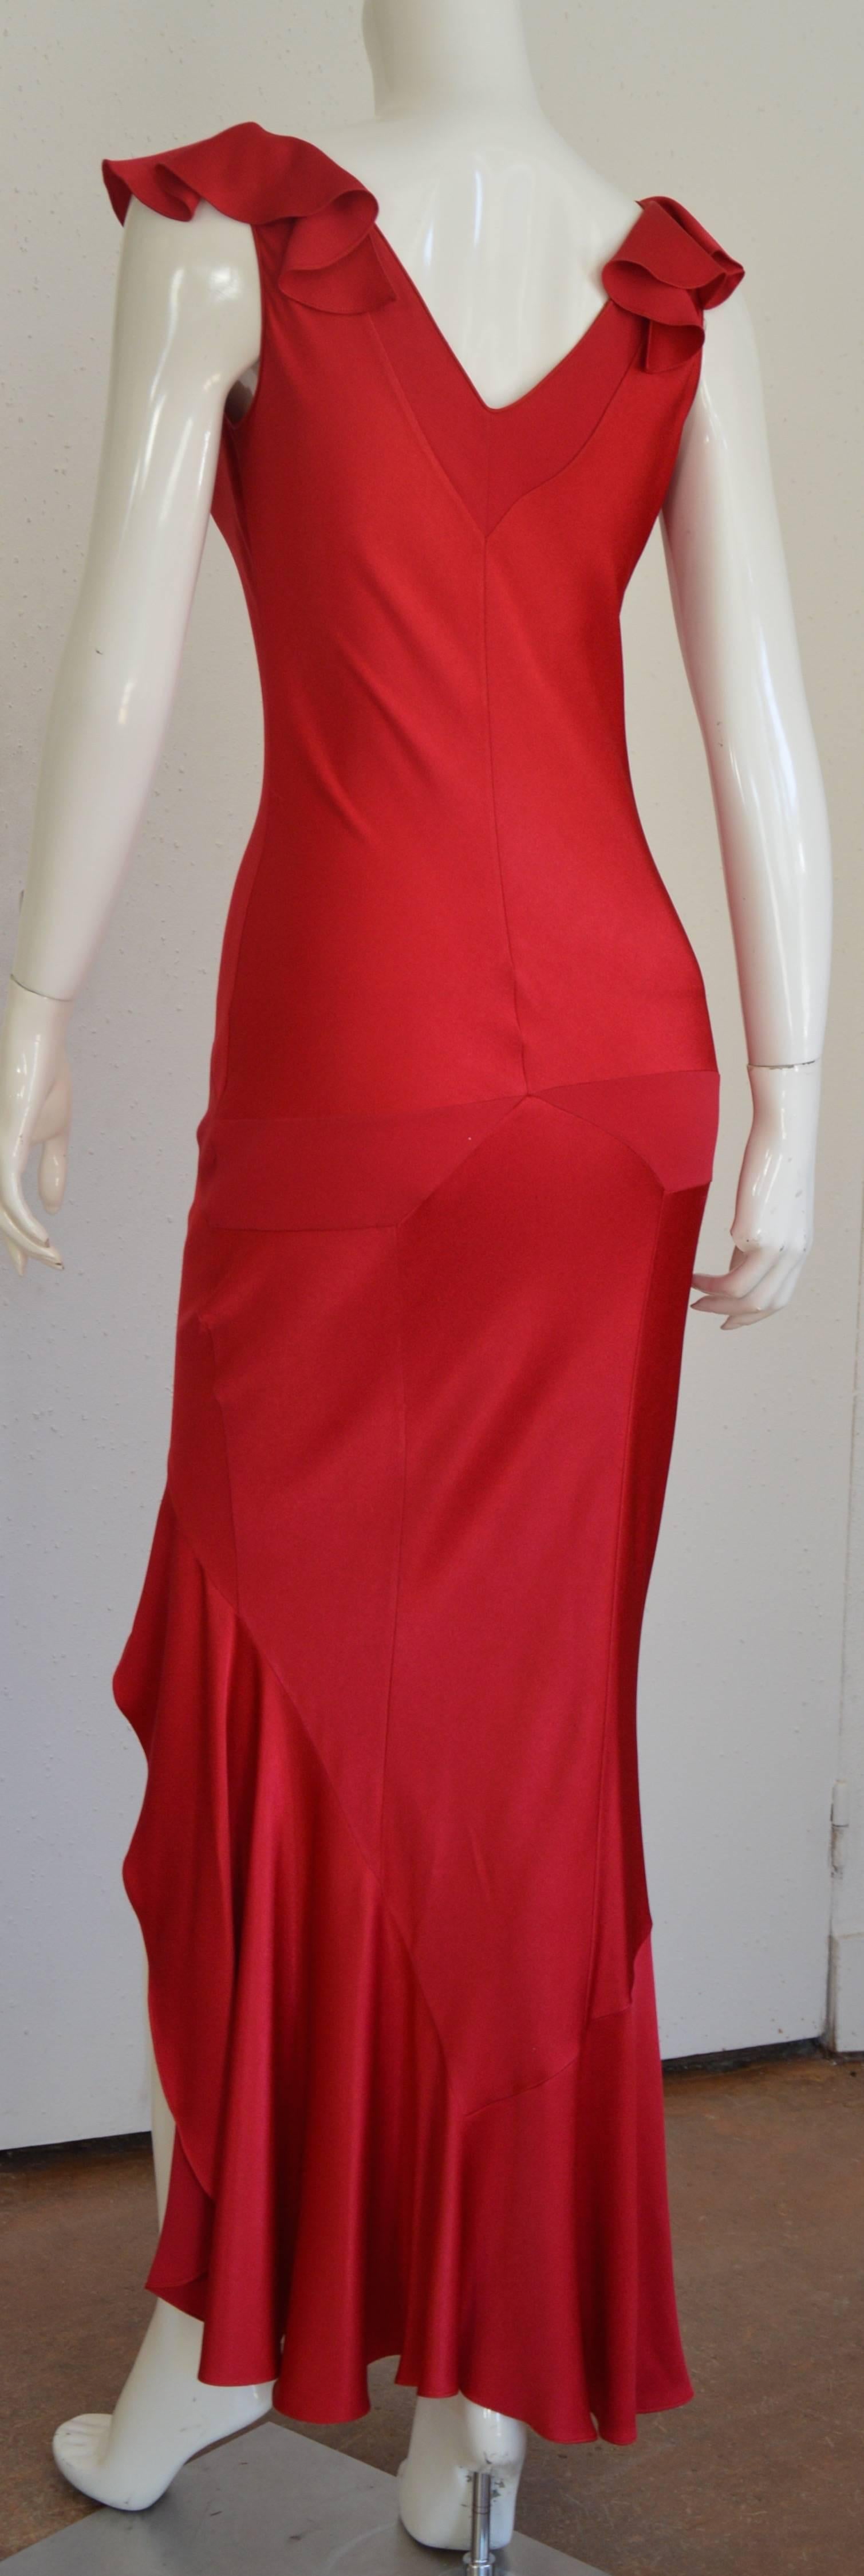 John Galliano Red Satiné Bias Dress 1